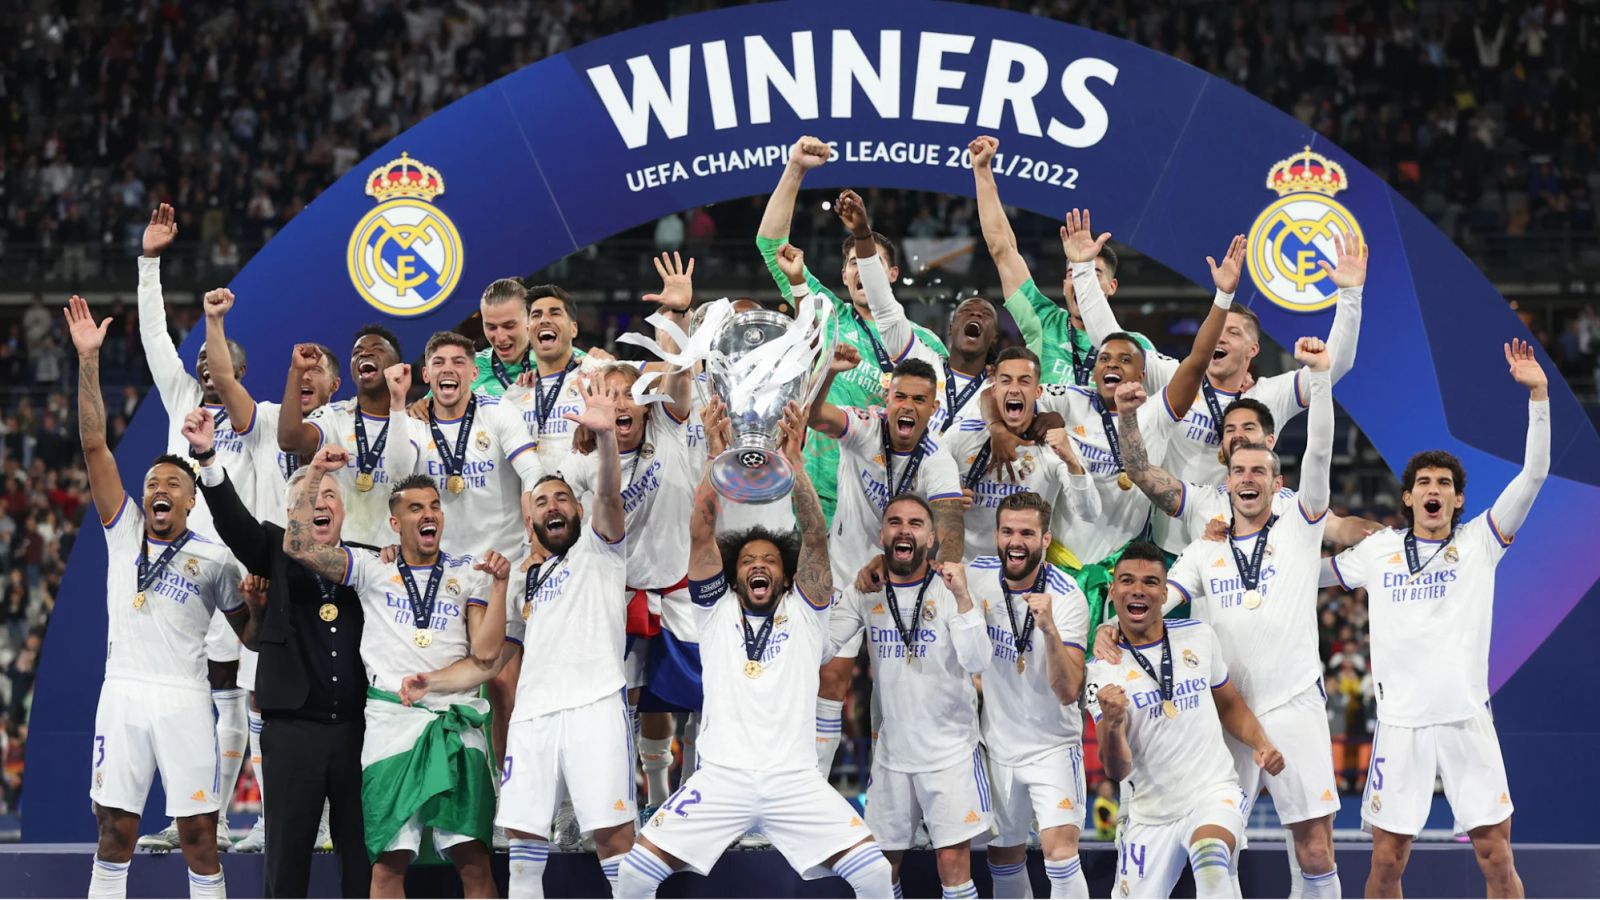 Los Blancos là gì? Niềm tự hào của người Madrid